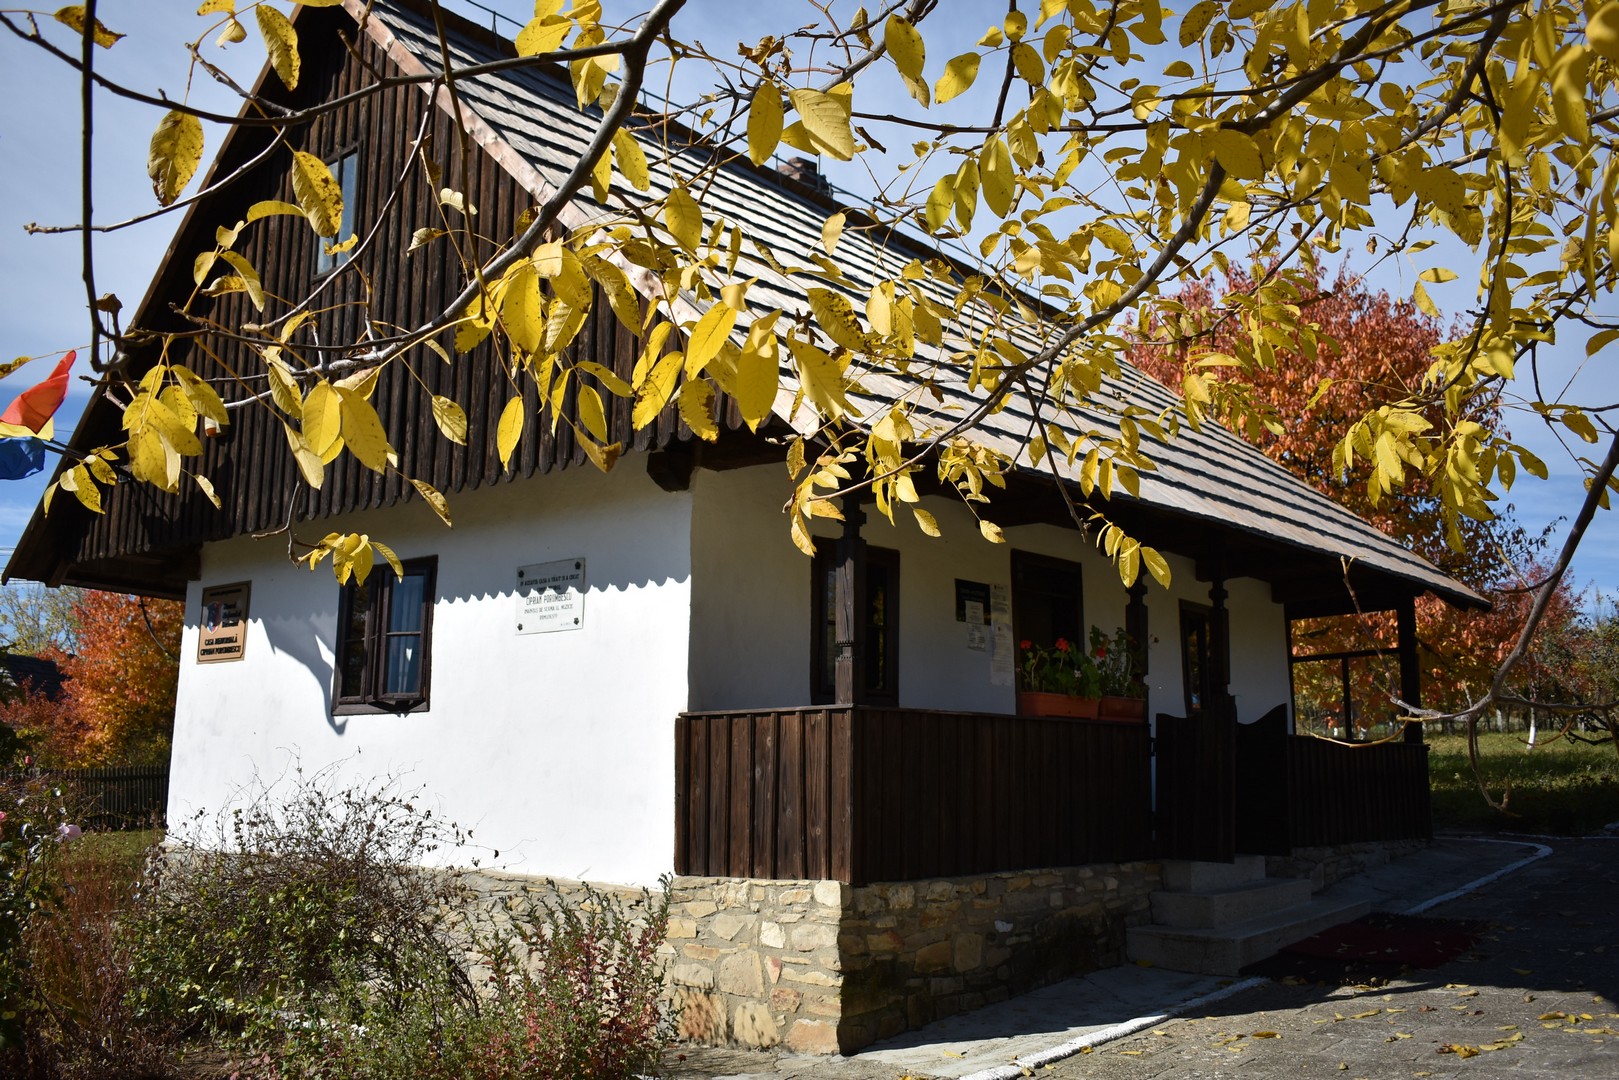 Pachet 3 zile în Botoșani, Salina Cacica și Mănăstirea Arbore cu demipensiune